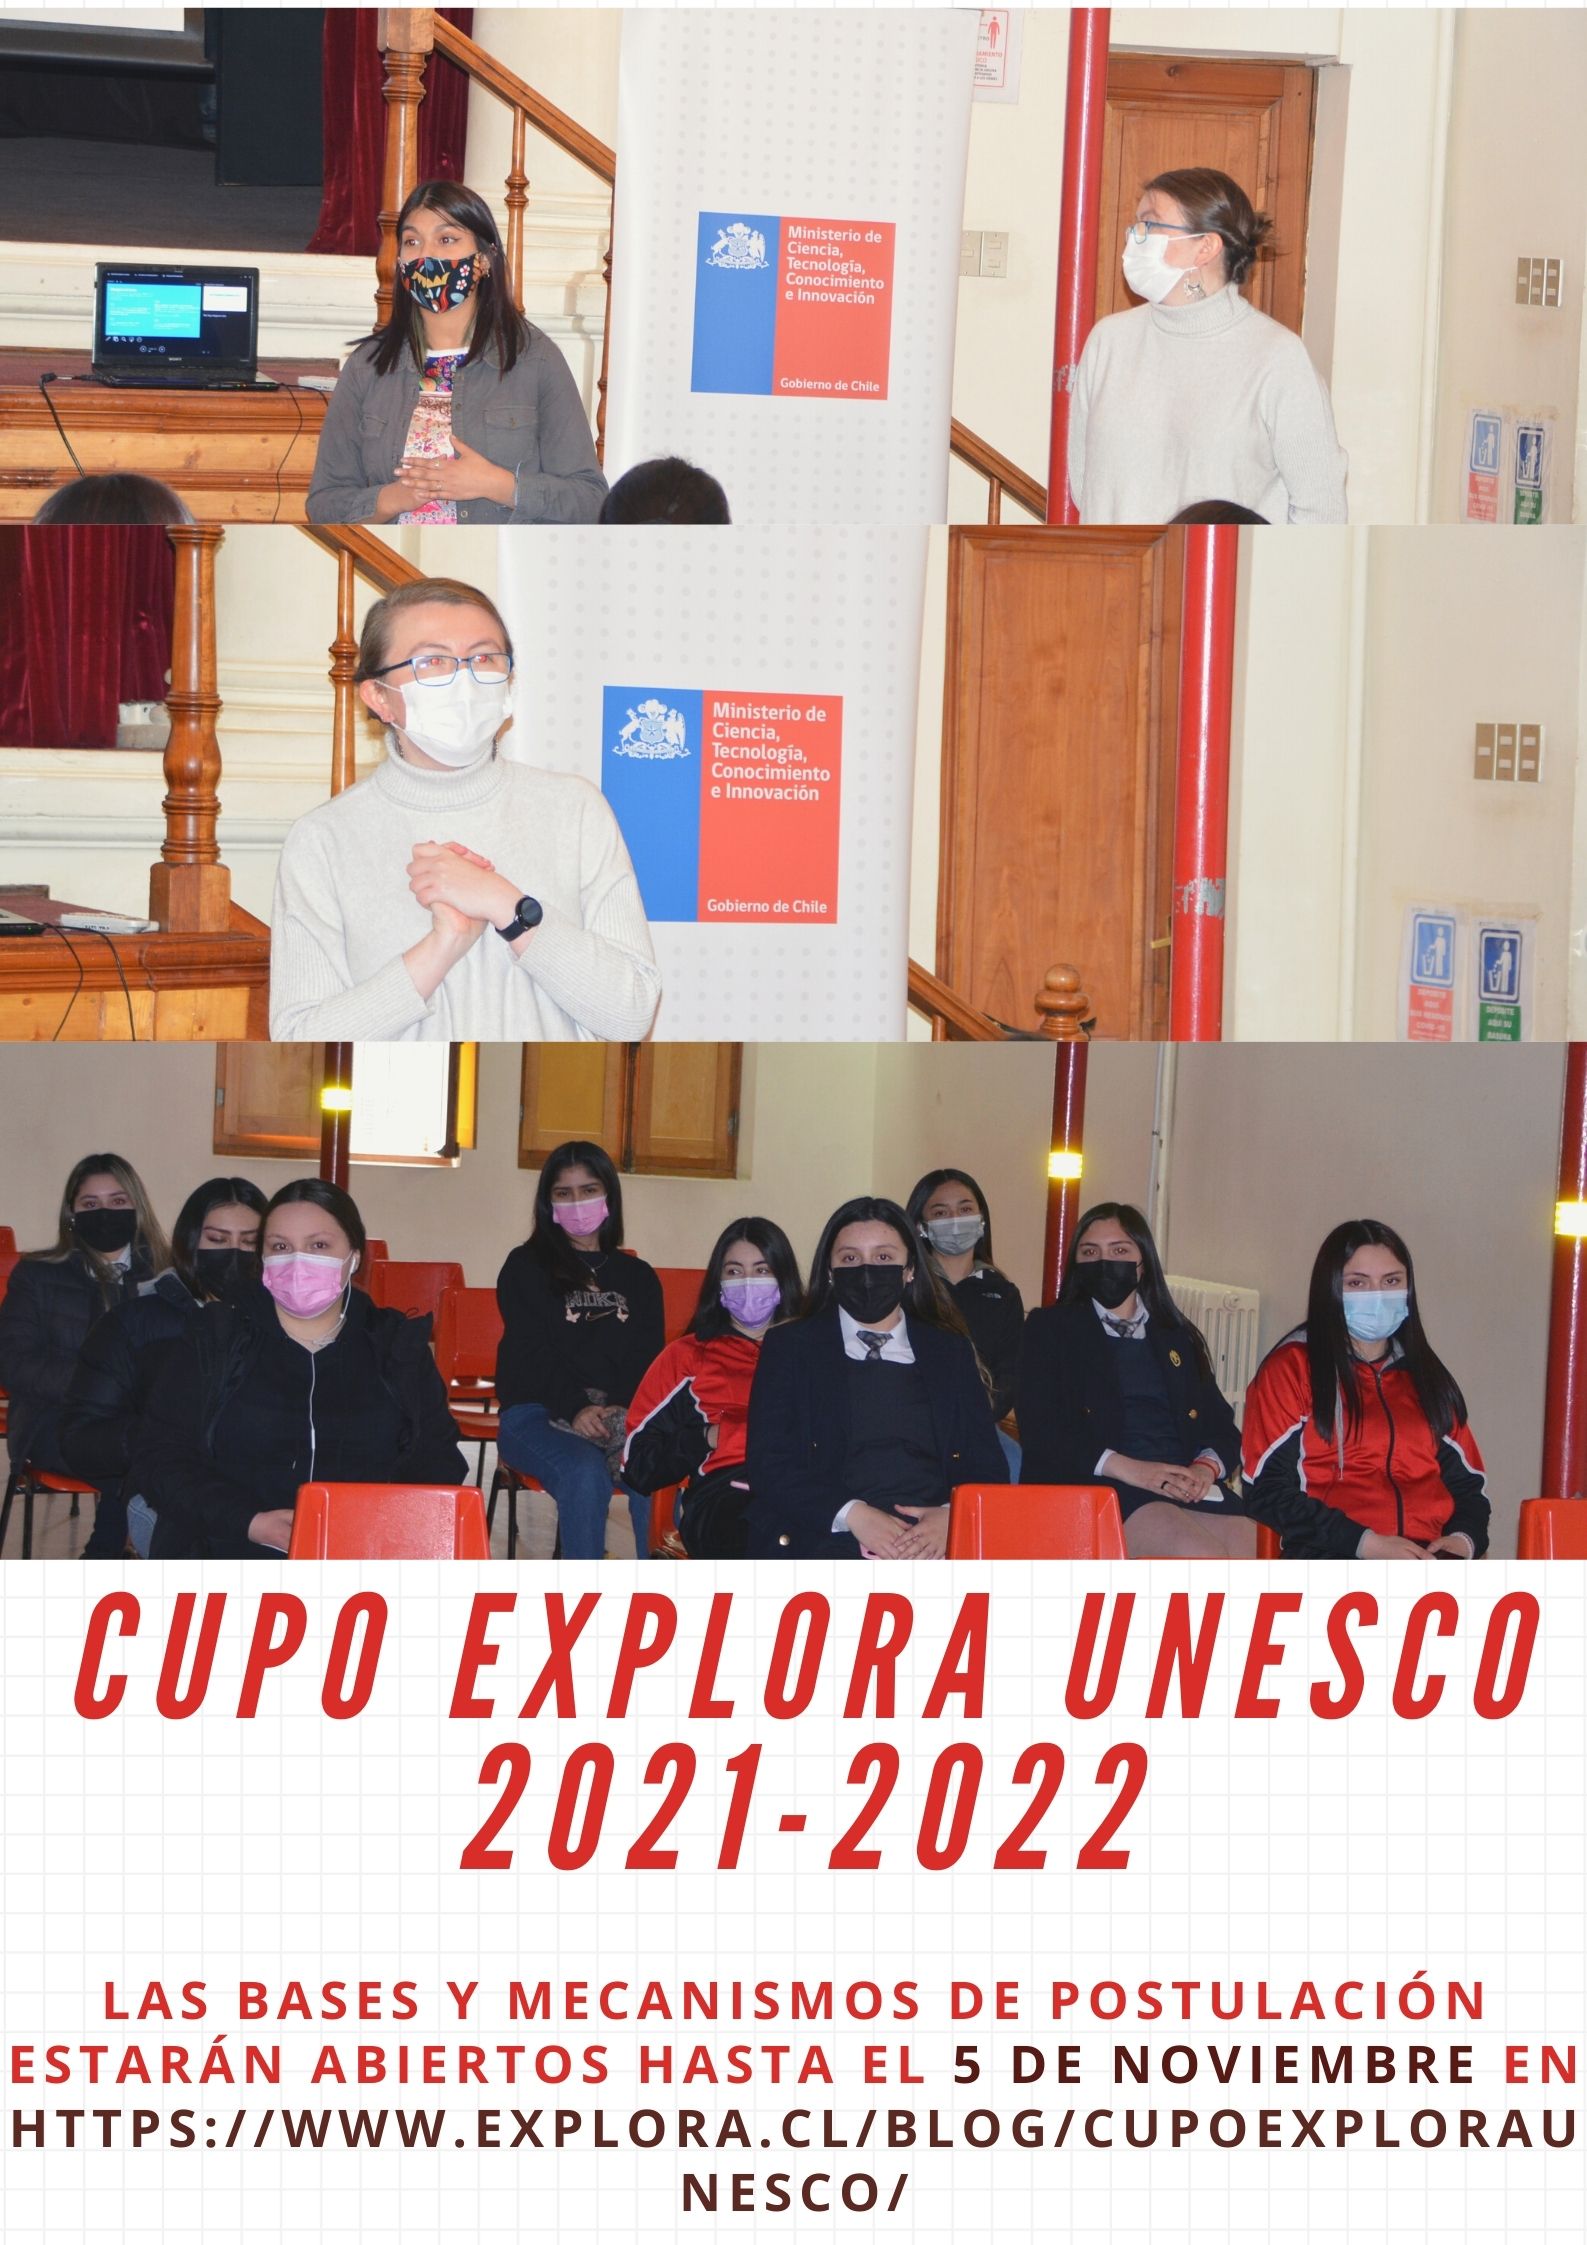 cupo explora unesco 2021 2022